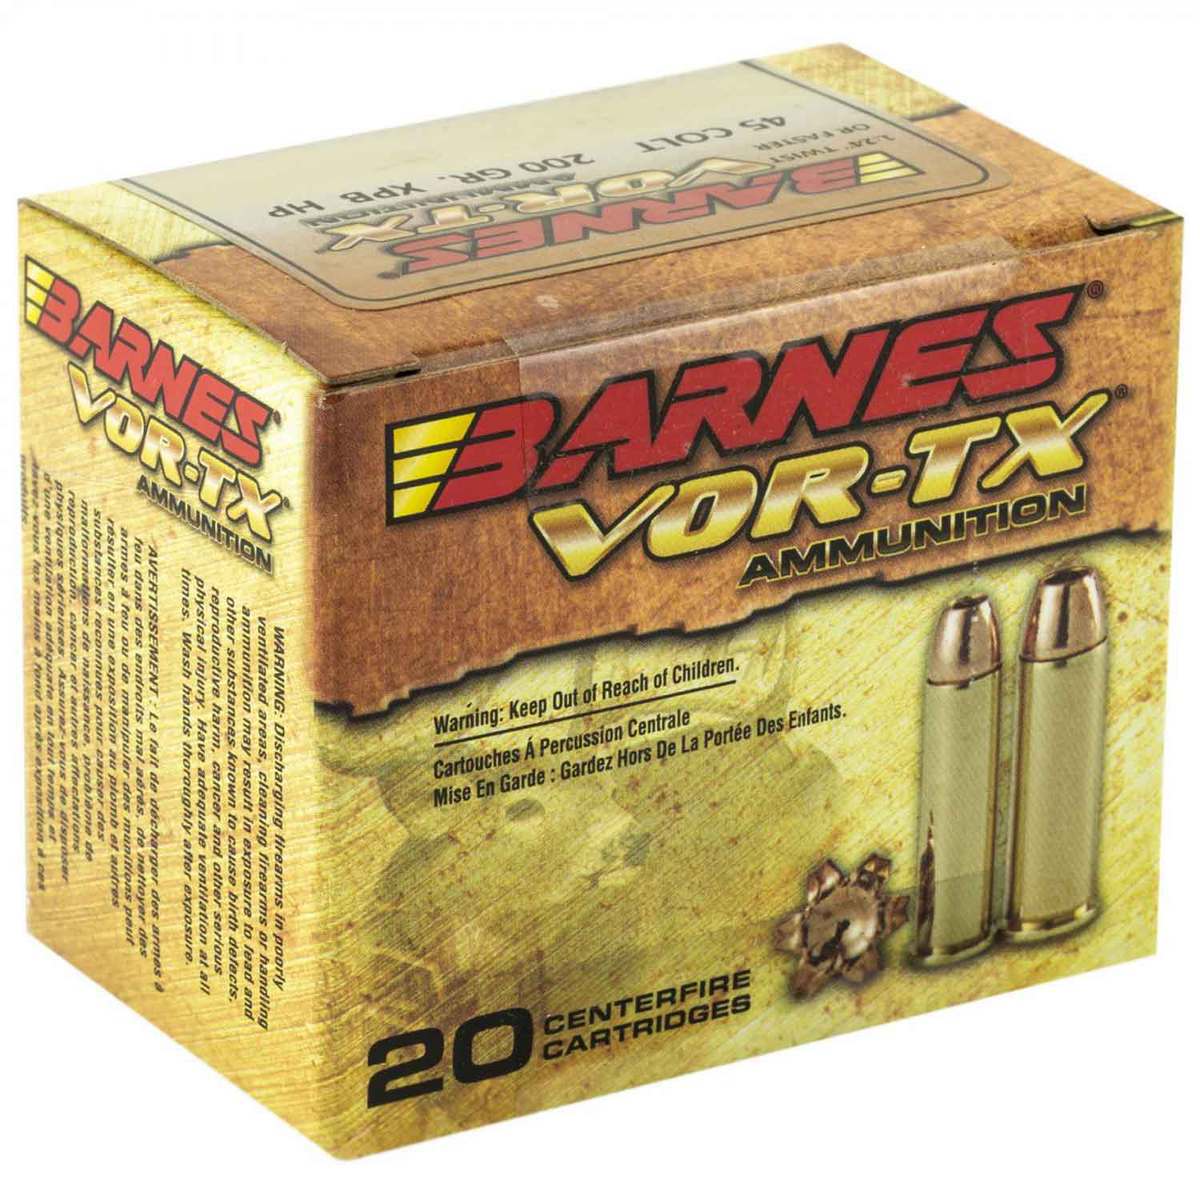 Barnes Vor Tx Ammunition Mail In Rebate